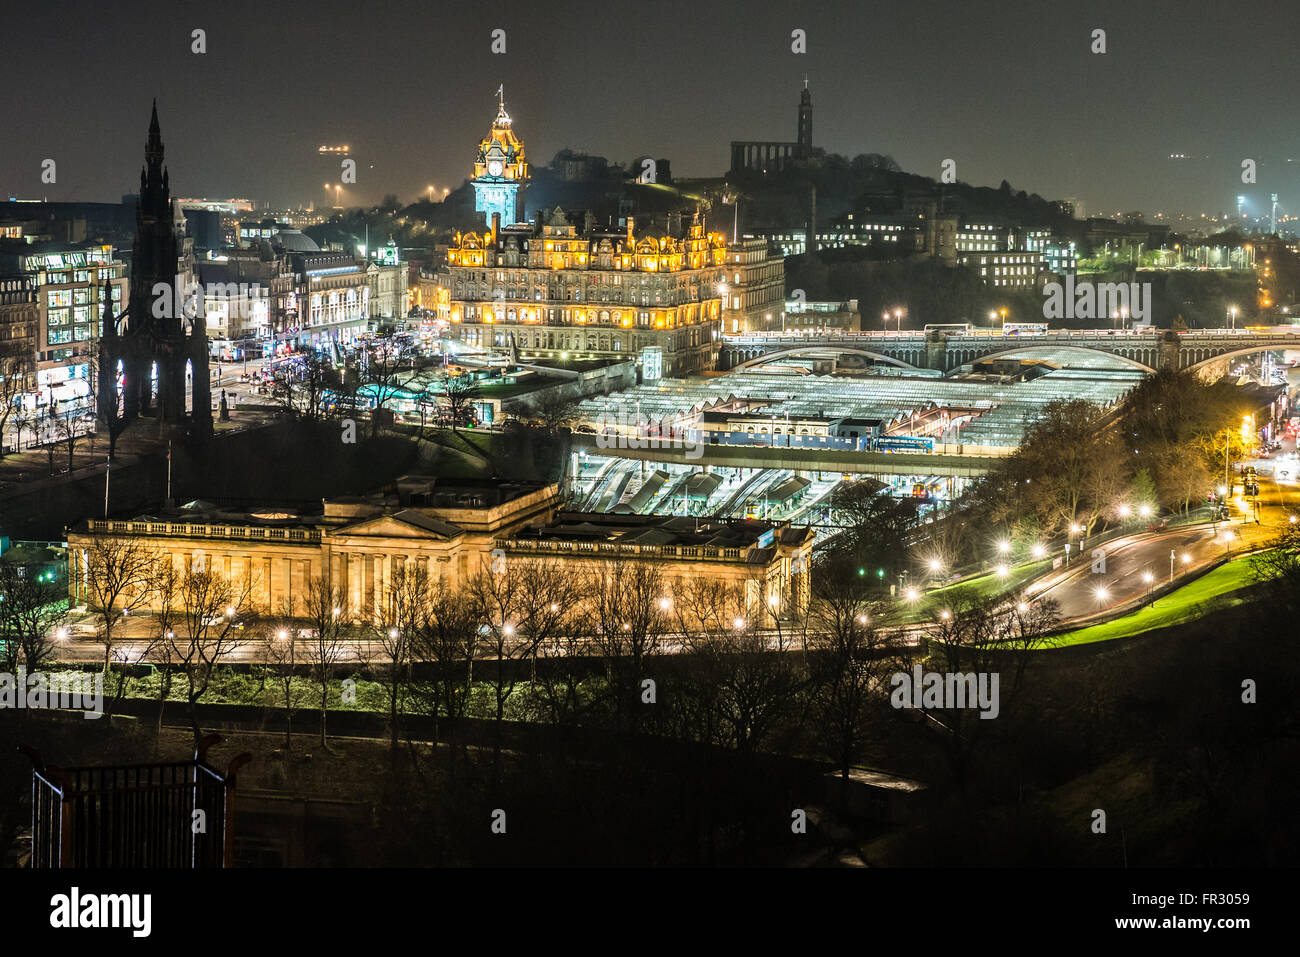 Luftbild vom Edinburgh Castle, Edinburgh, Schottland im Königreich. National Gallery of Scotland und Waverley Bahnhof auf Foto Stockfoto